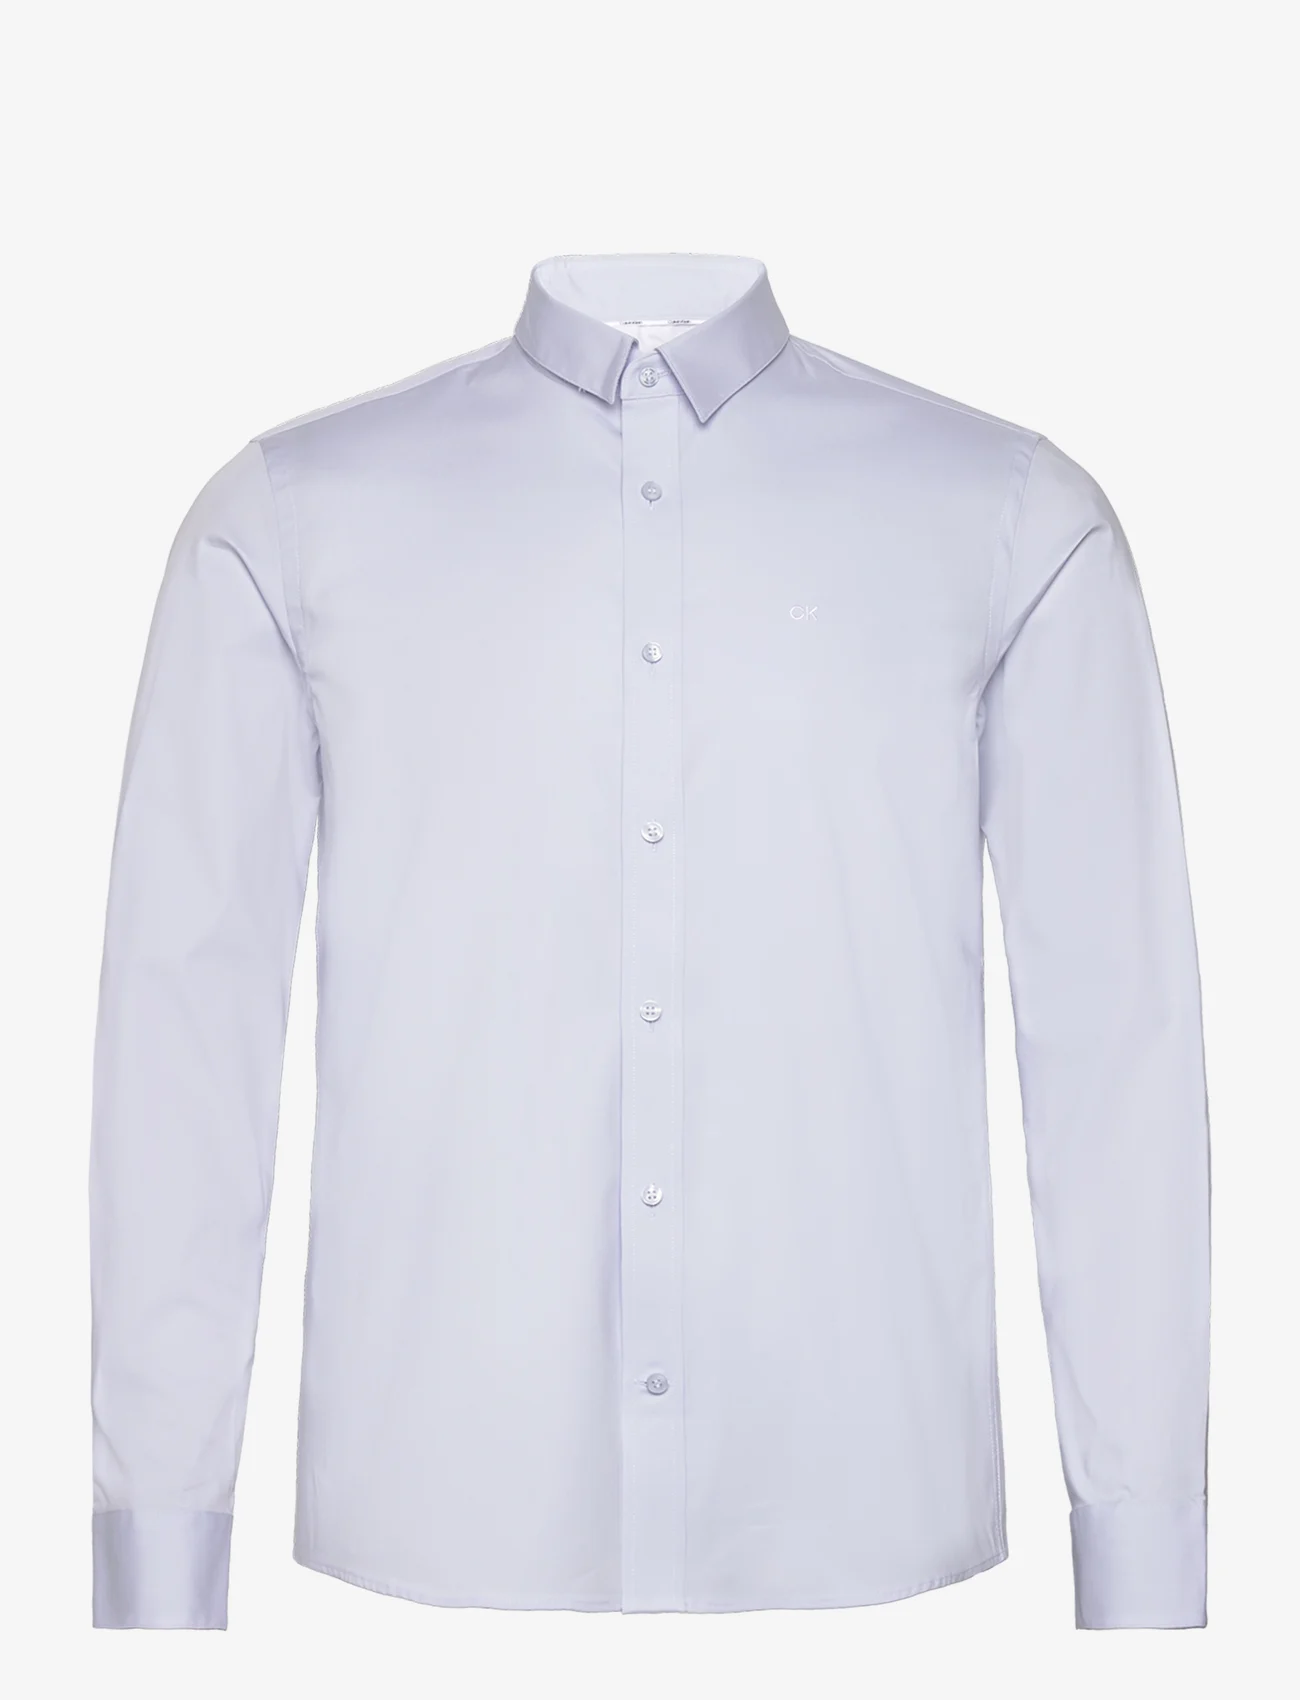 Calvin Klein - POPLIN STRETCH SLIM SHIRT - dalykinio stiliaus marškiniai - light blue - 0